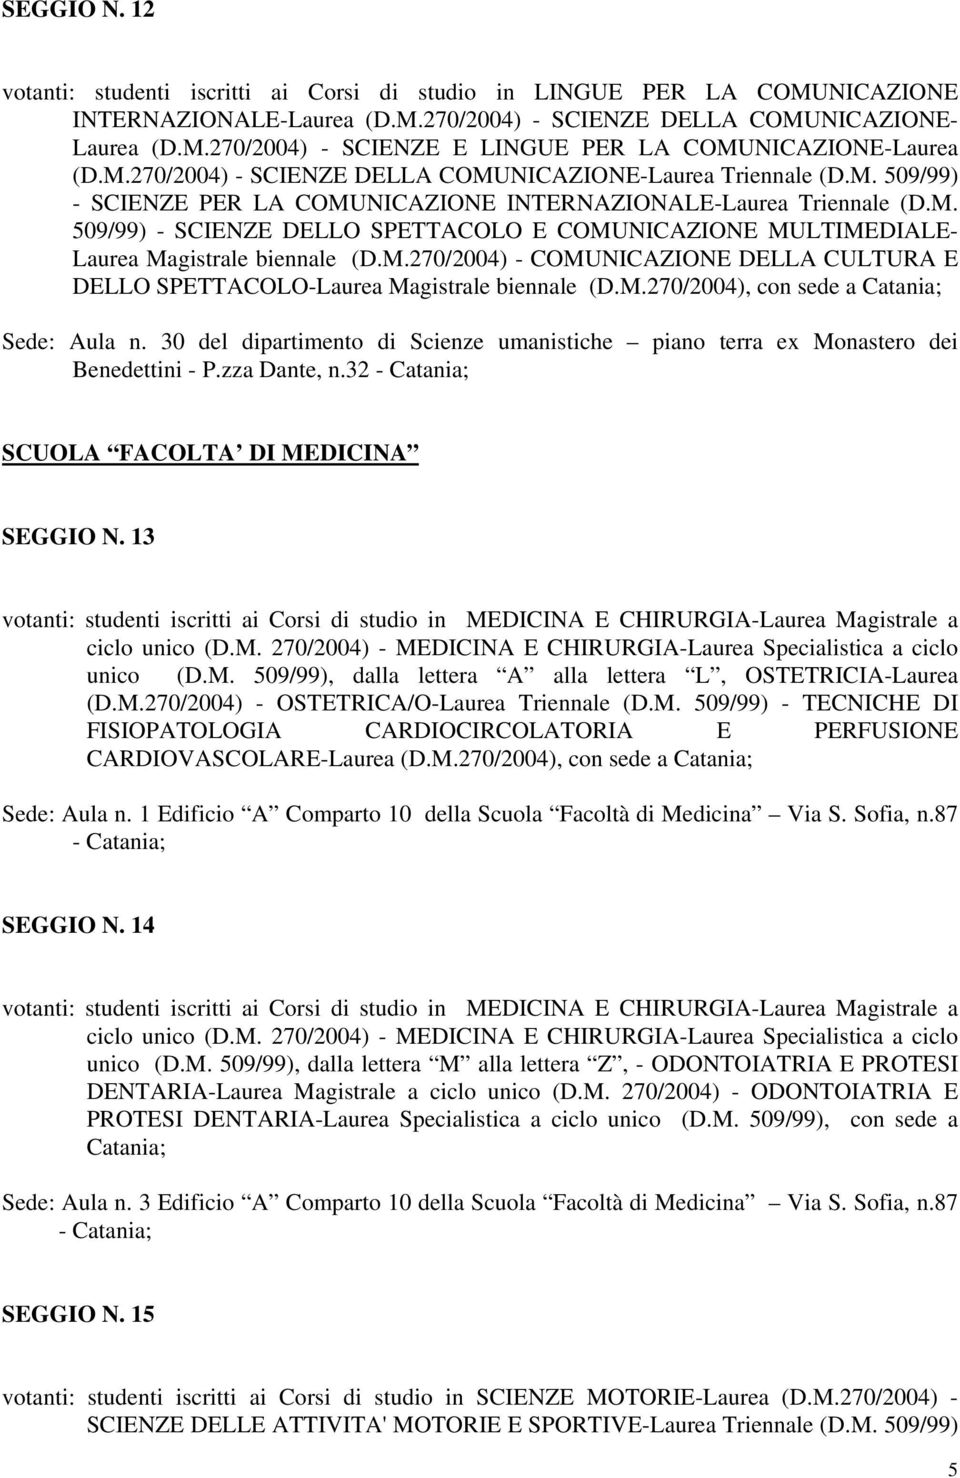 M.270/2004) - COMUNICAZIONE DELLA CULTURA E DELLO SPETTACOLO-Laurea Magistrale biennale (D.M.270/2004), con sede a Catania; Sede: Aula n.